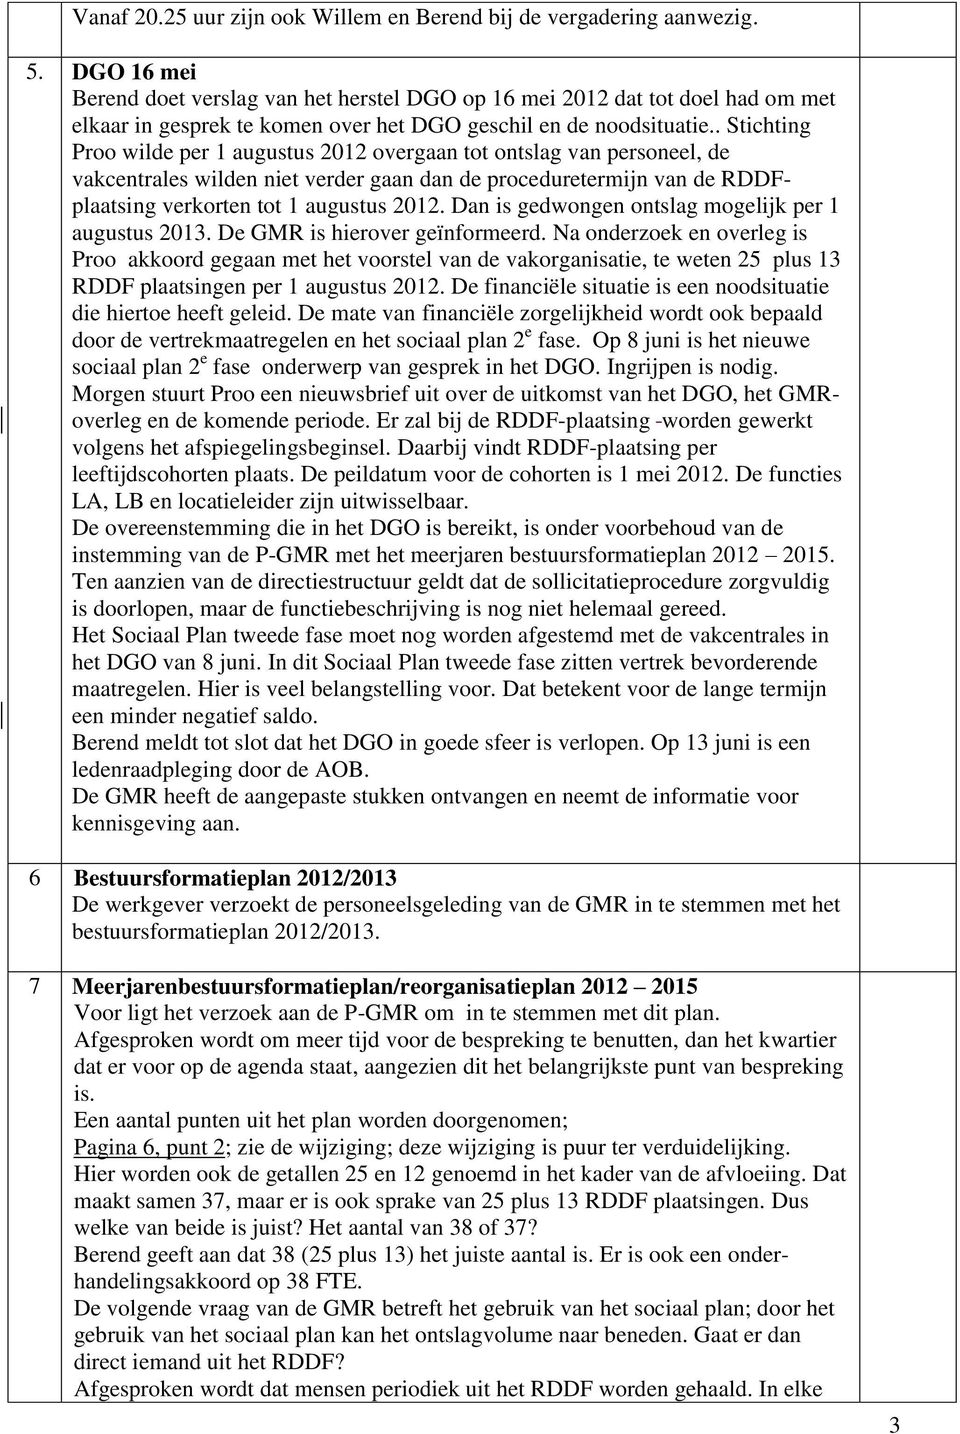 . Stichting Proo wilde per 1 augustus 2012 overgaan tot ontslag van personeel, de vakcentrales wilden niet verder gaan dan de proceduretermijn van de RDDFplaatsing verkorten tot 1 augustus 2012.